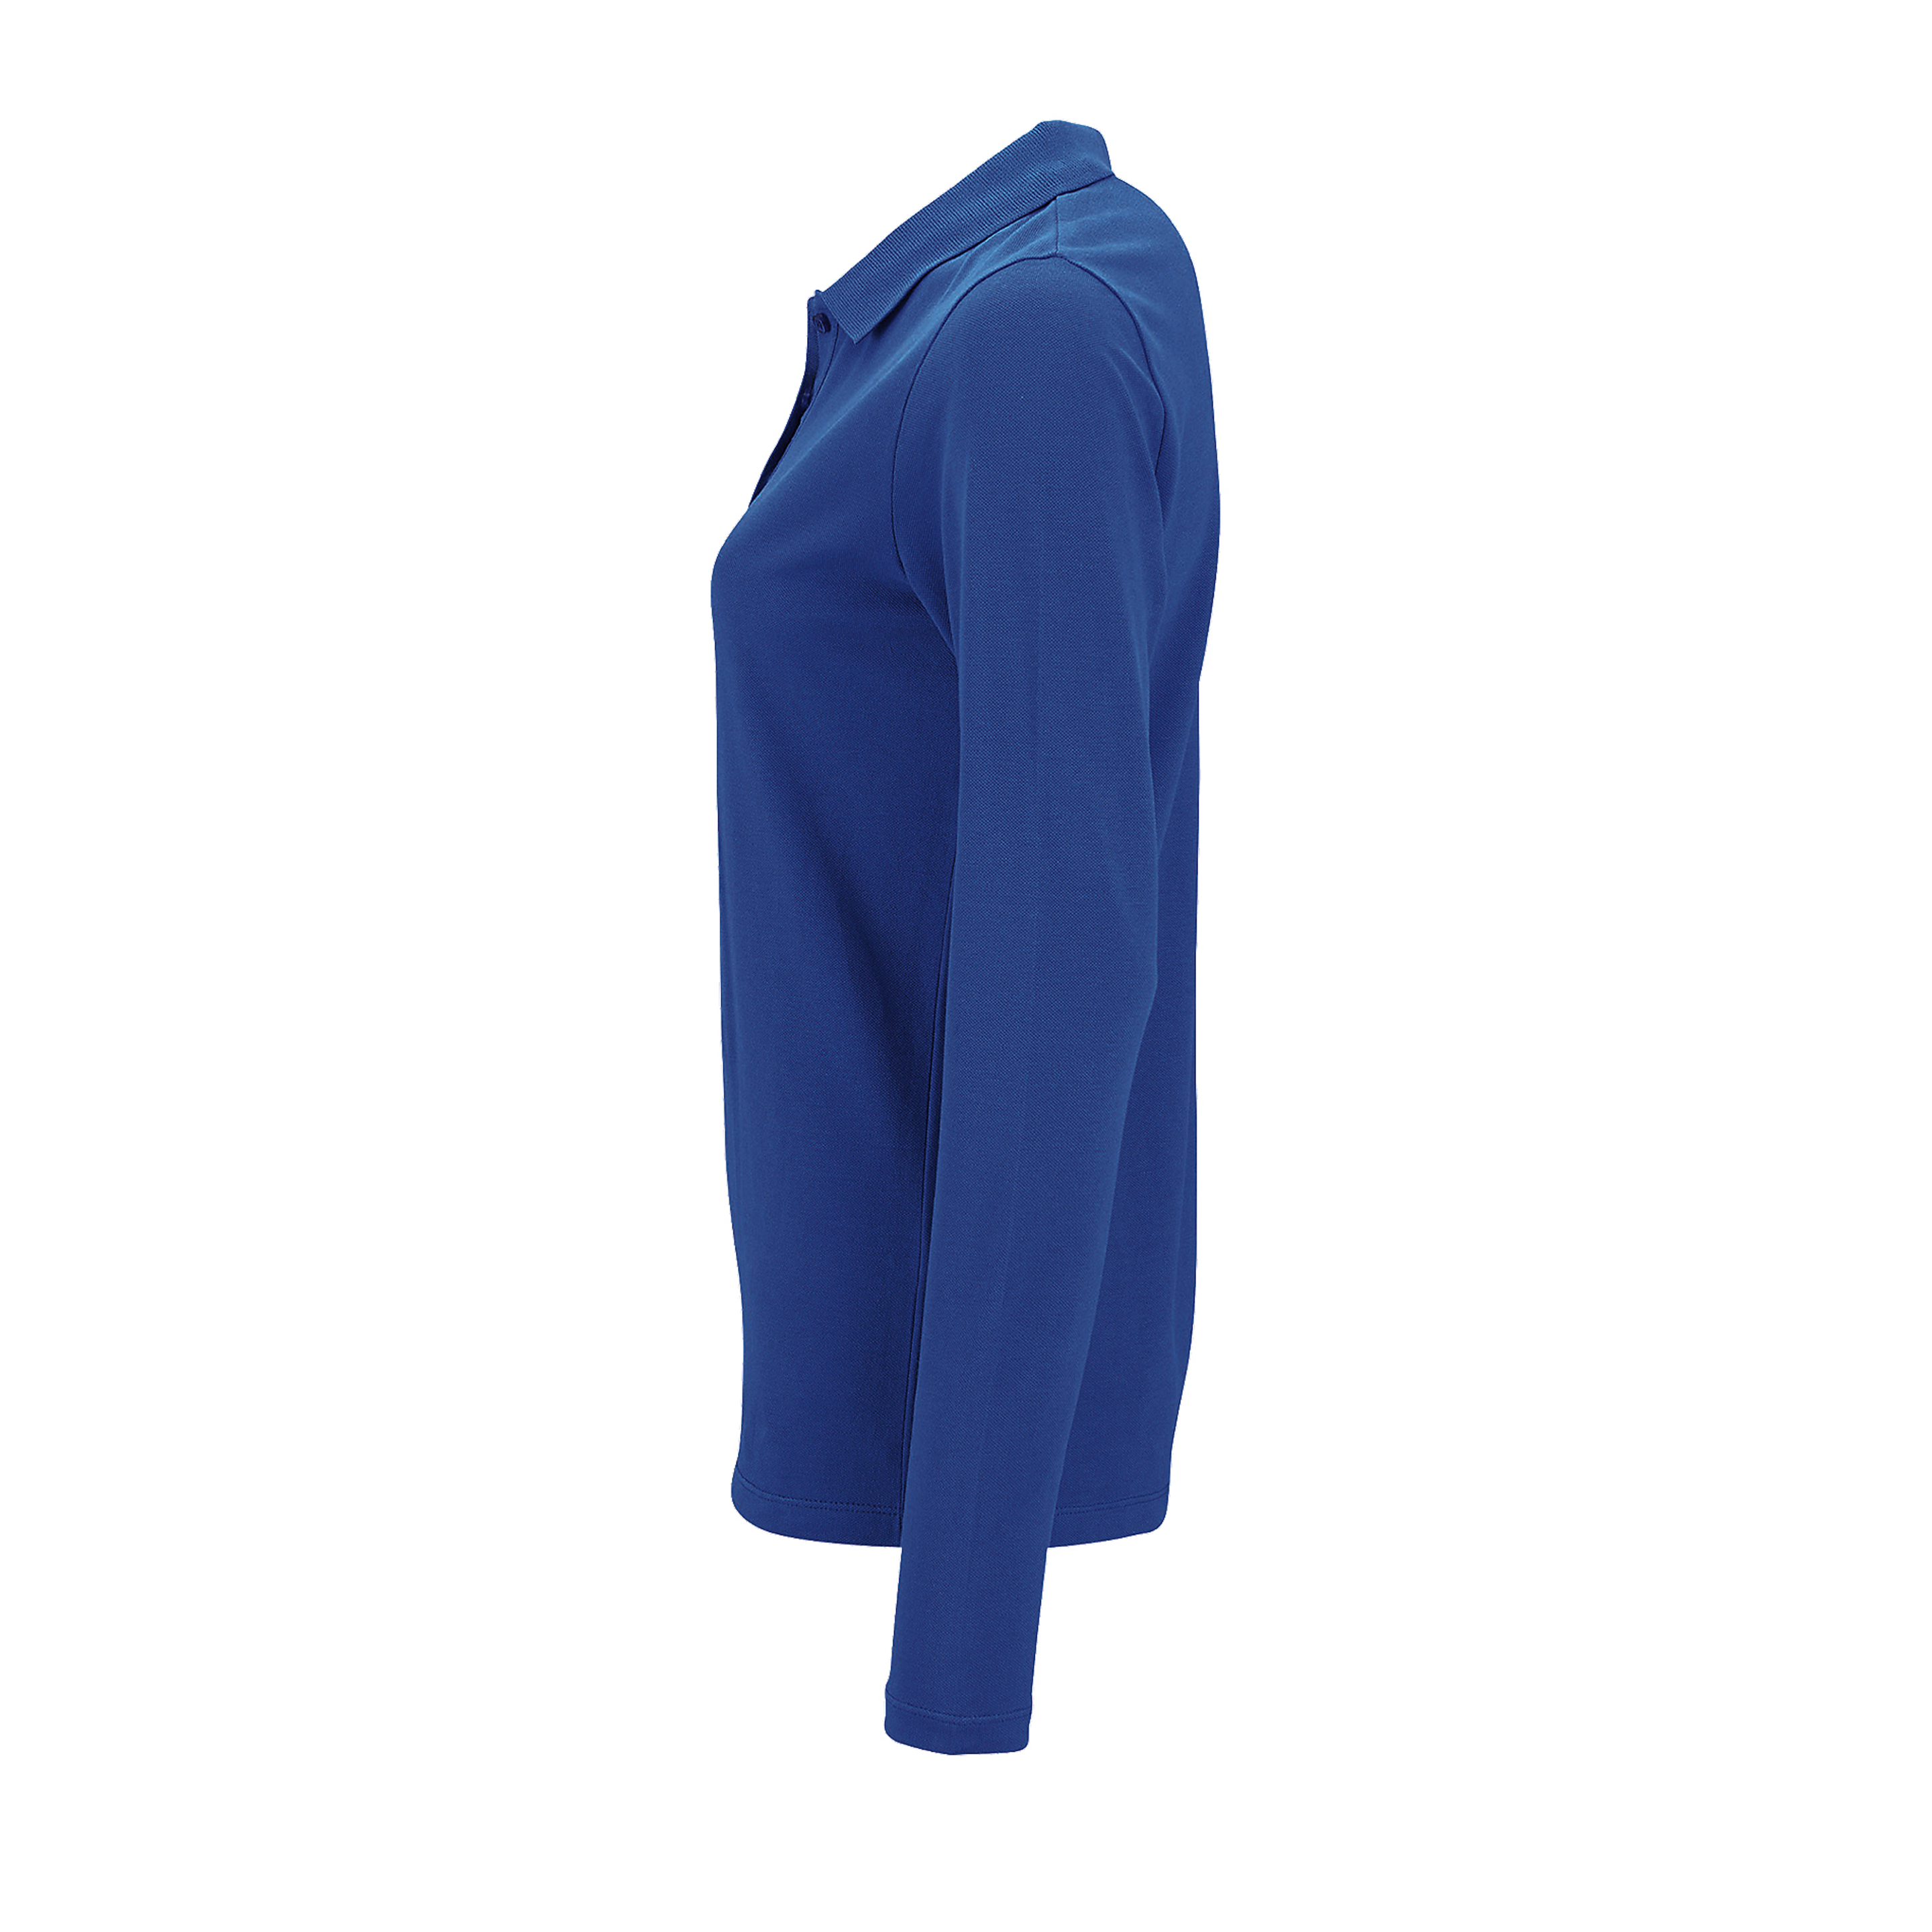 Mulheres/ladies Perfect Long Sleeve Pique Polo Shirt Sols (Royal Blue)